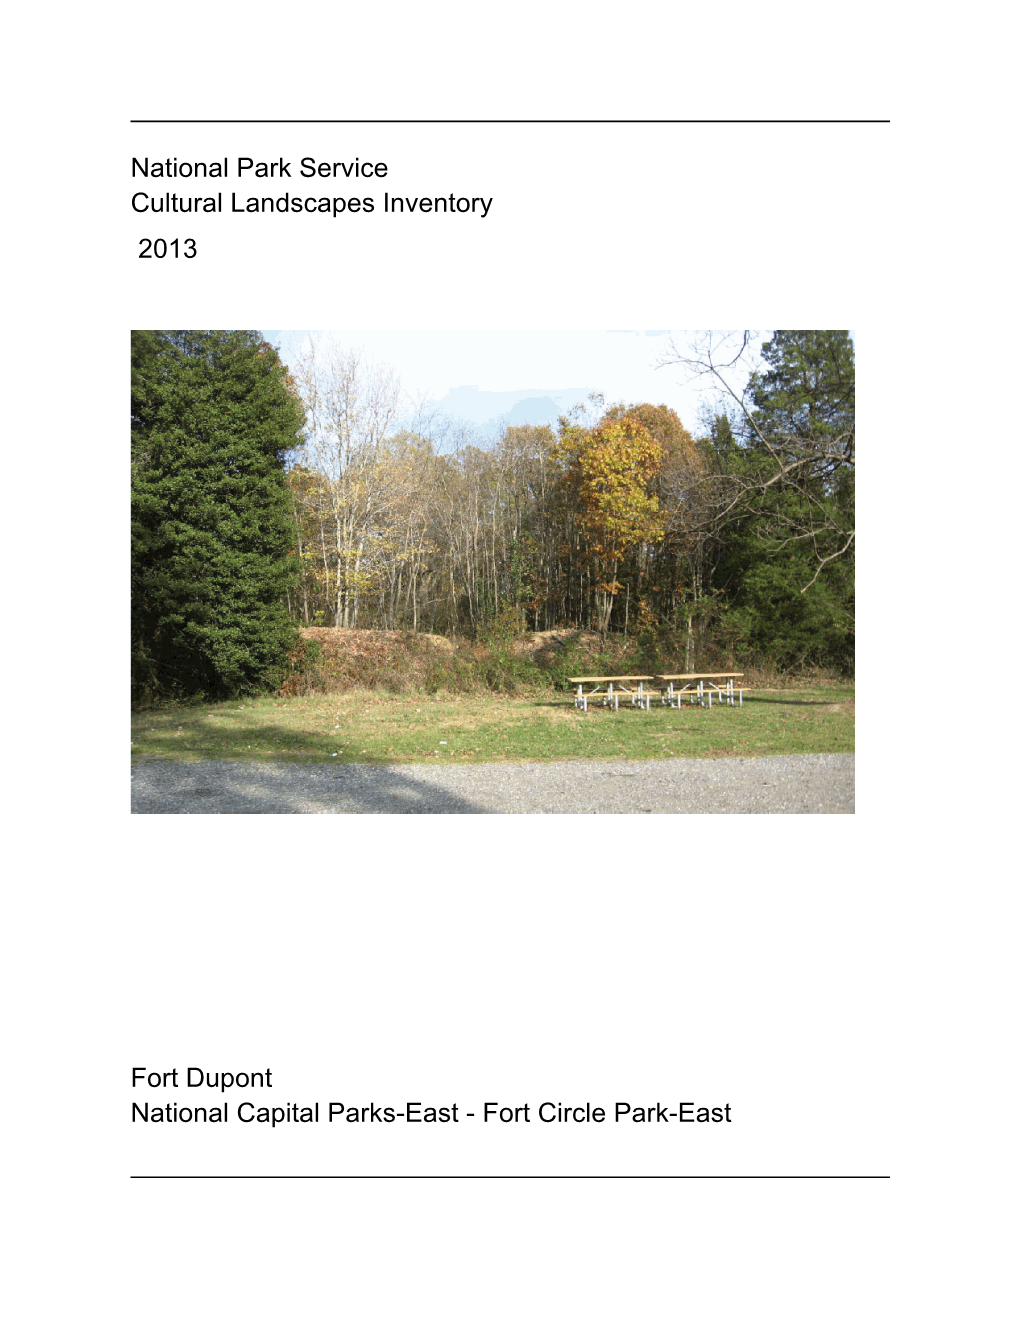 National Park Service Cultural Landscapes Inventory Fort Dupont